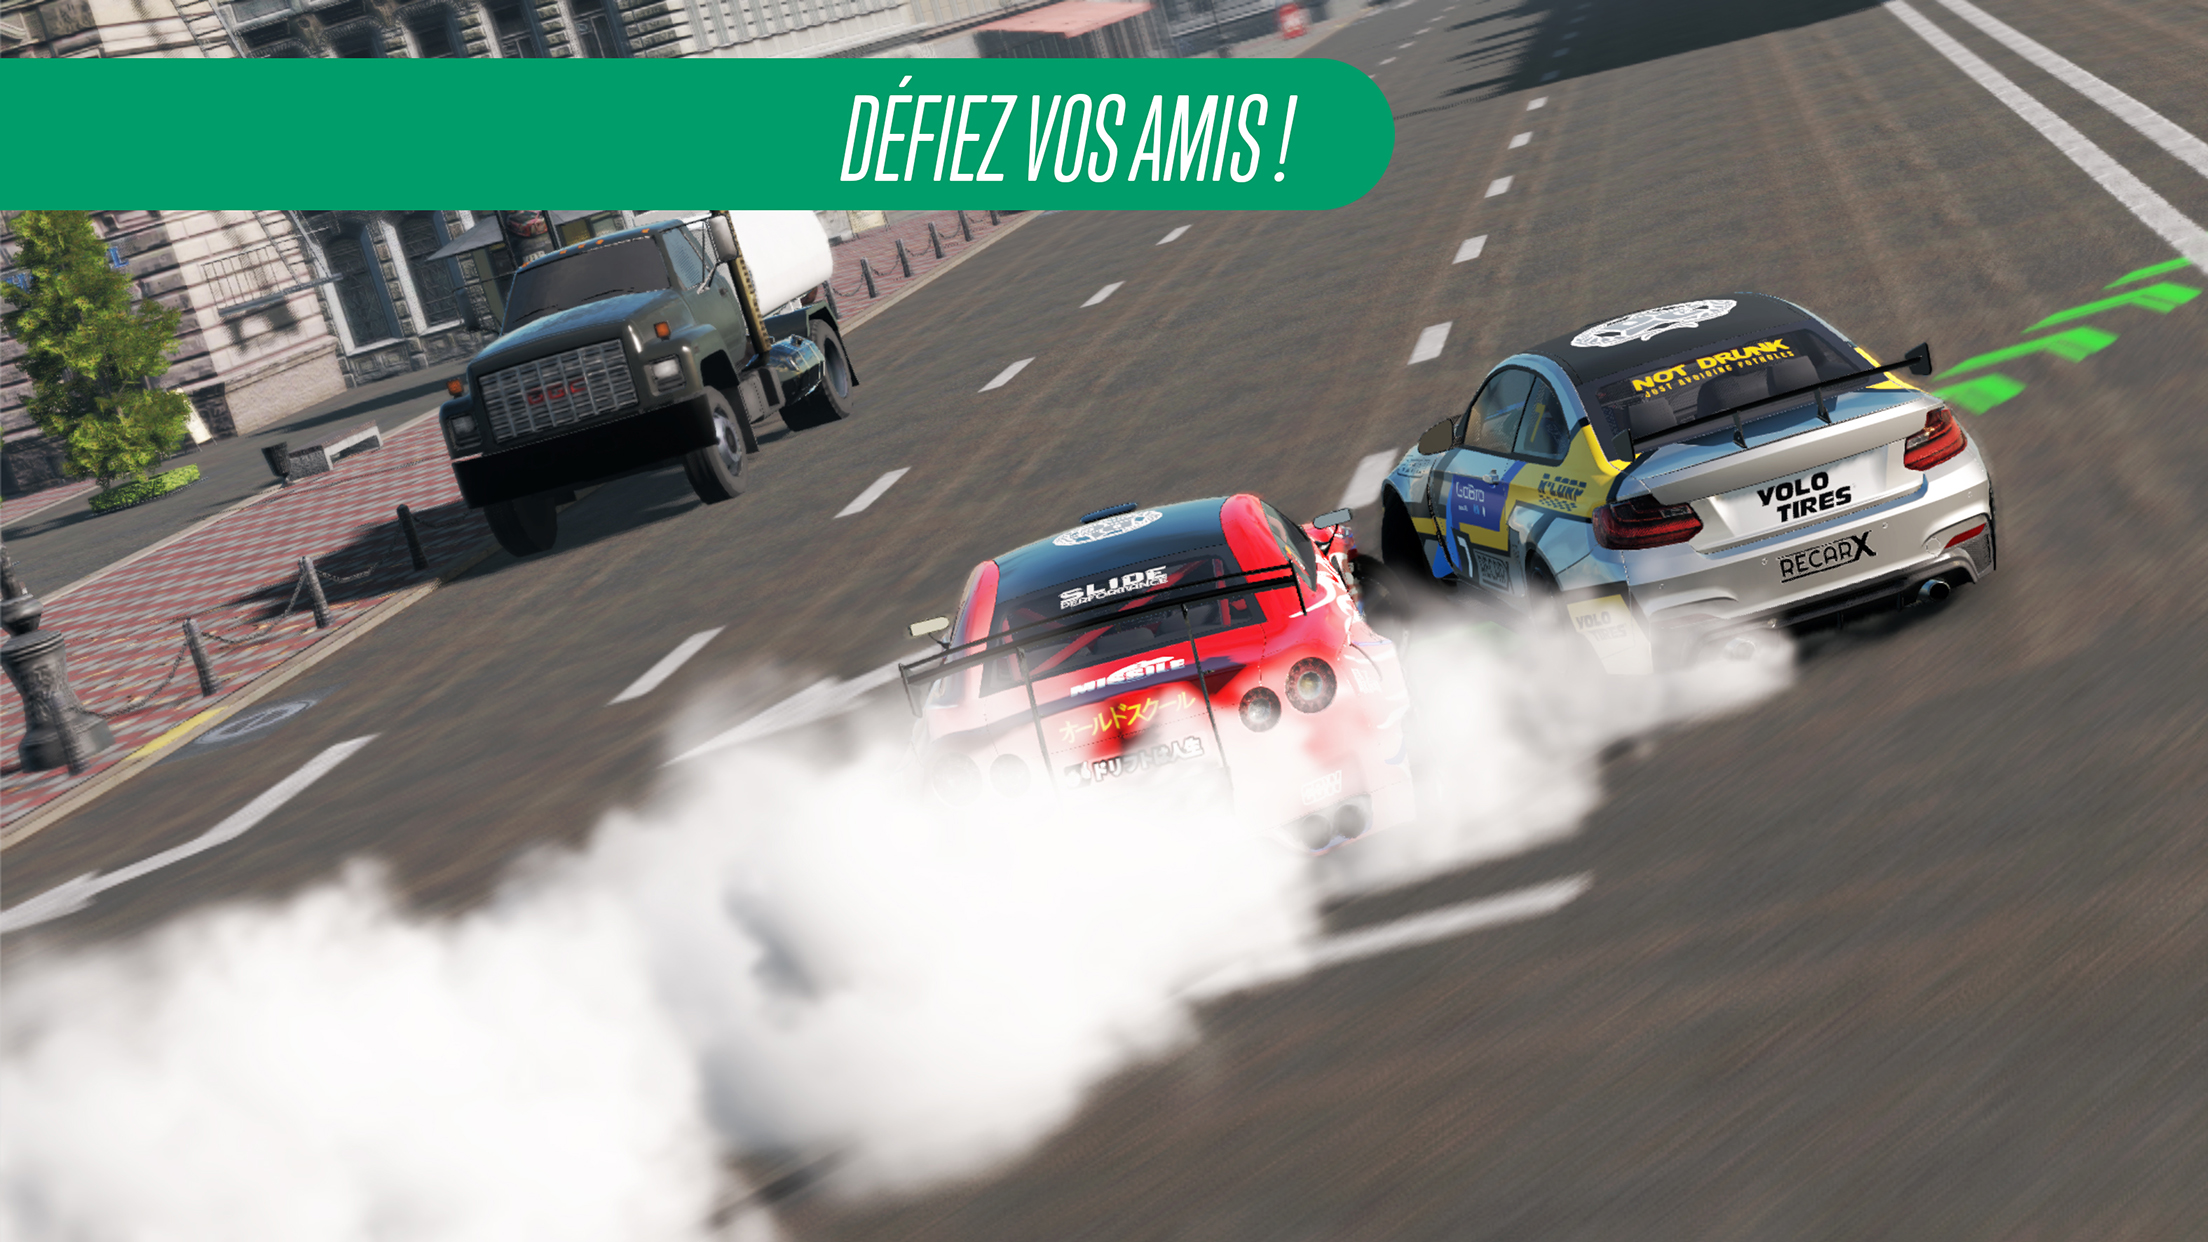 تحميل لعبة CarX Drift Racing 2 مهكرة لـ أندرويد